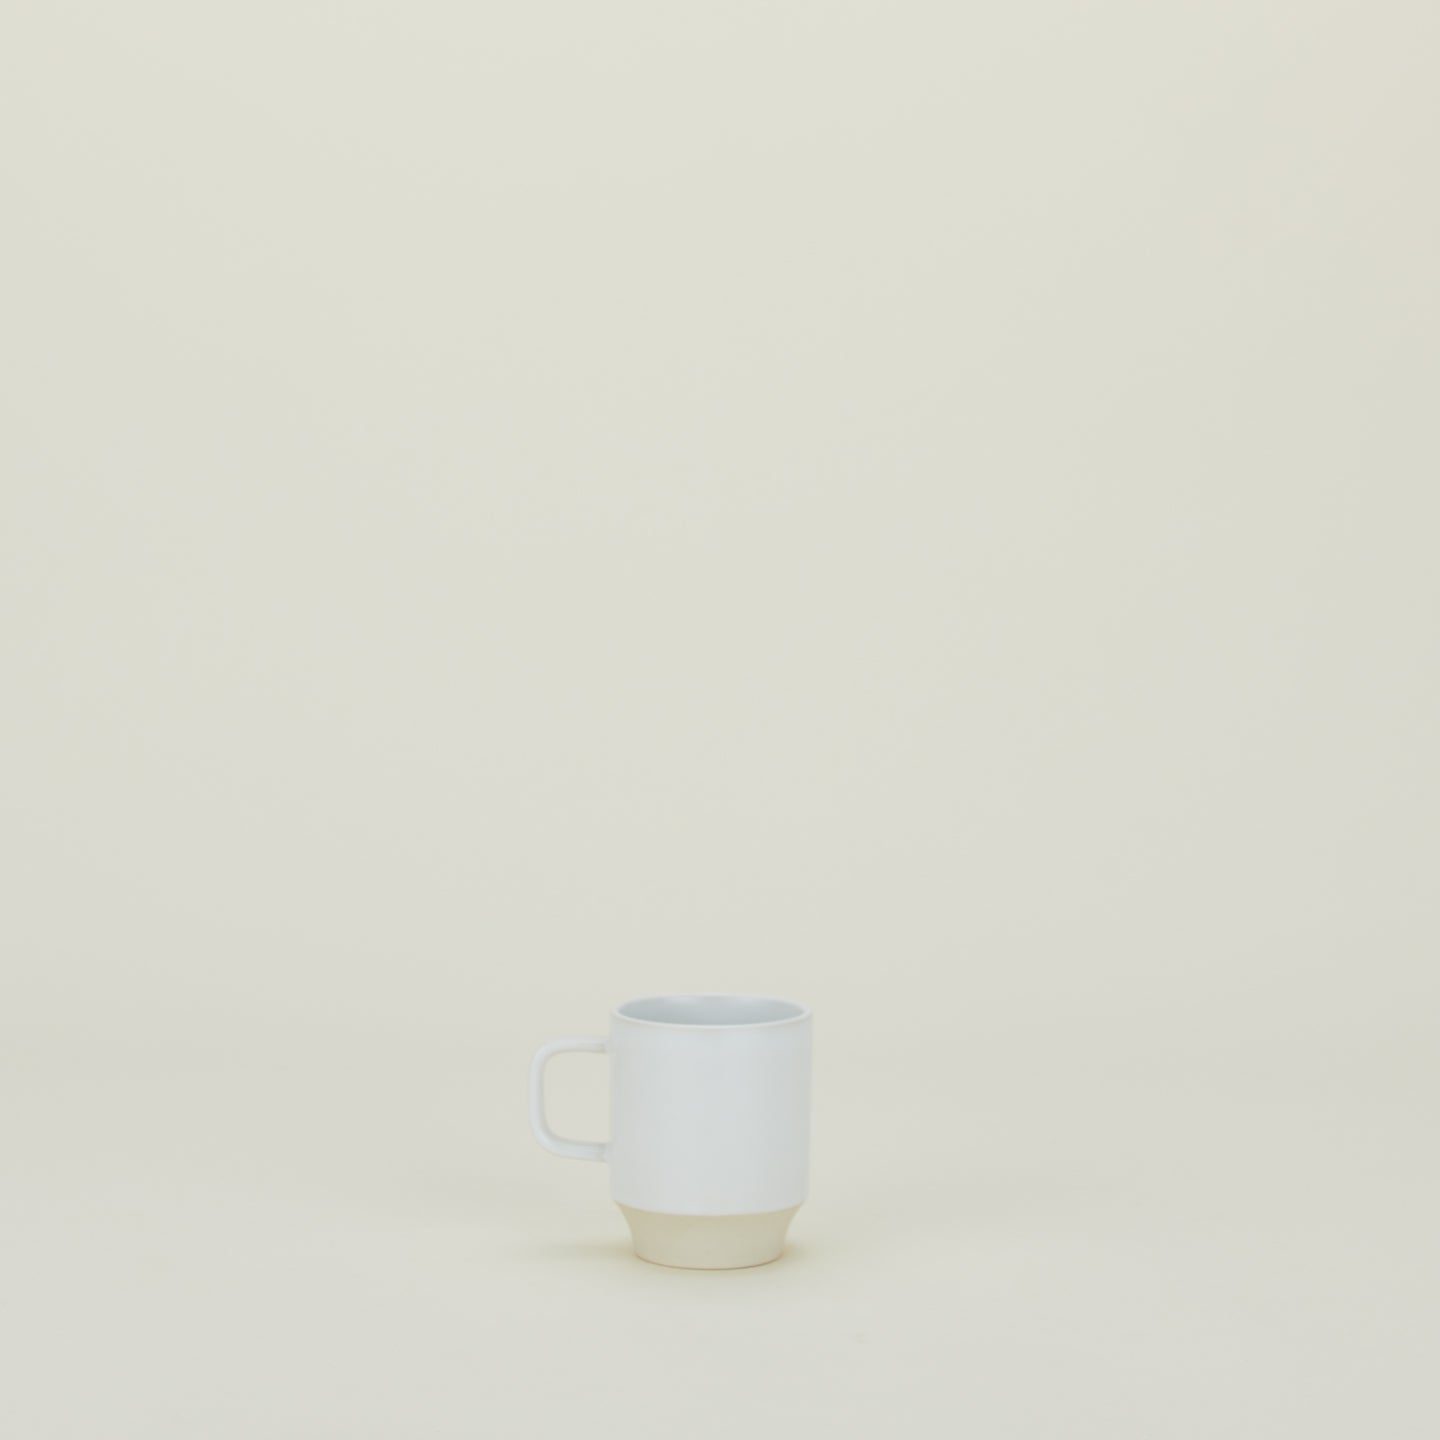 Modernist Mug